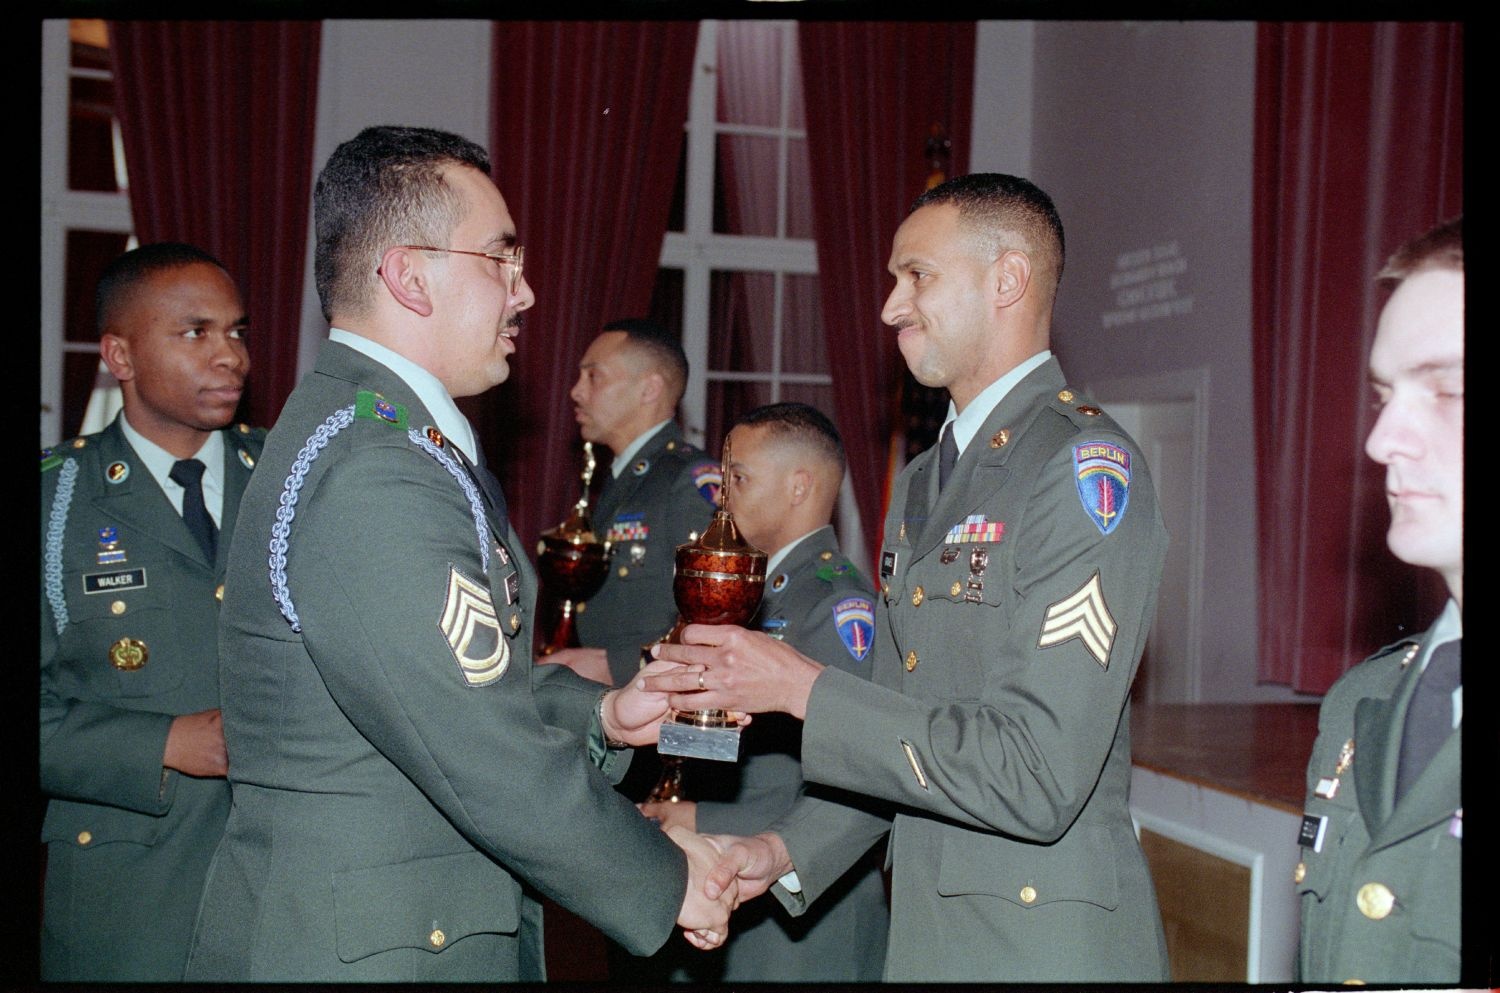 Fotografie: Auszeichnung von Unteroffizieren des 5th Battalion 502nd Infantry Regiment der U.S. Army Berlin in Berlin-Dahlem